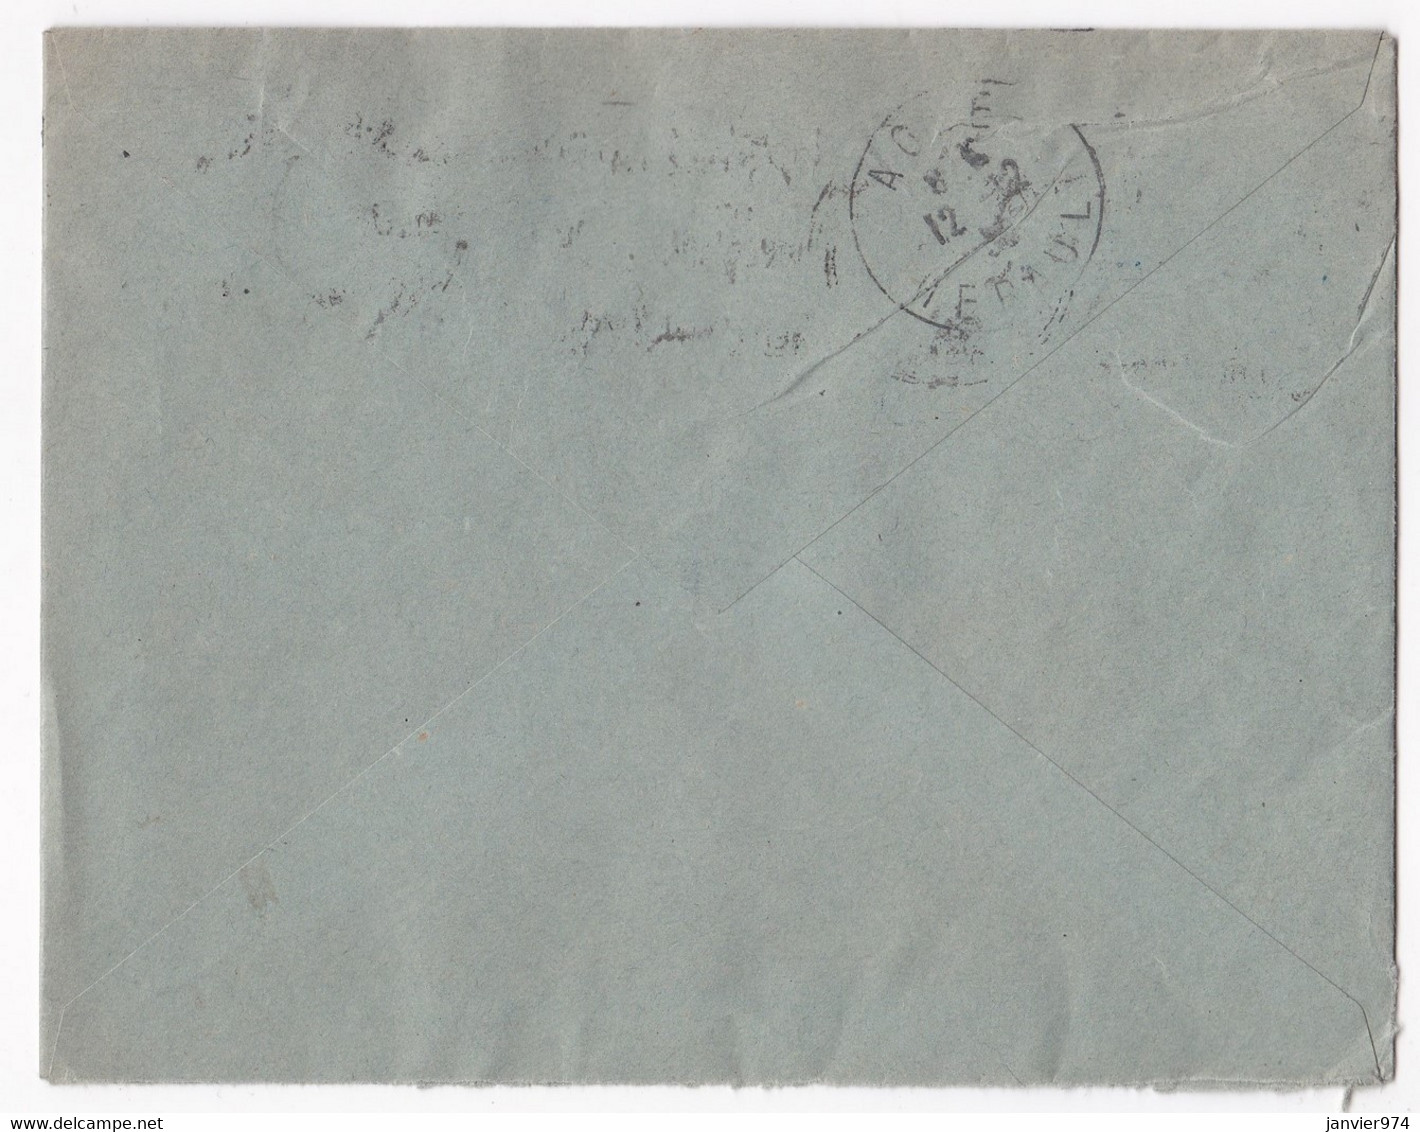 Enveloppe 1920, Joaillerie J. Sanne à Lyon - Covers & Documents